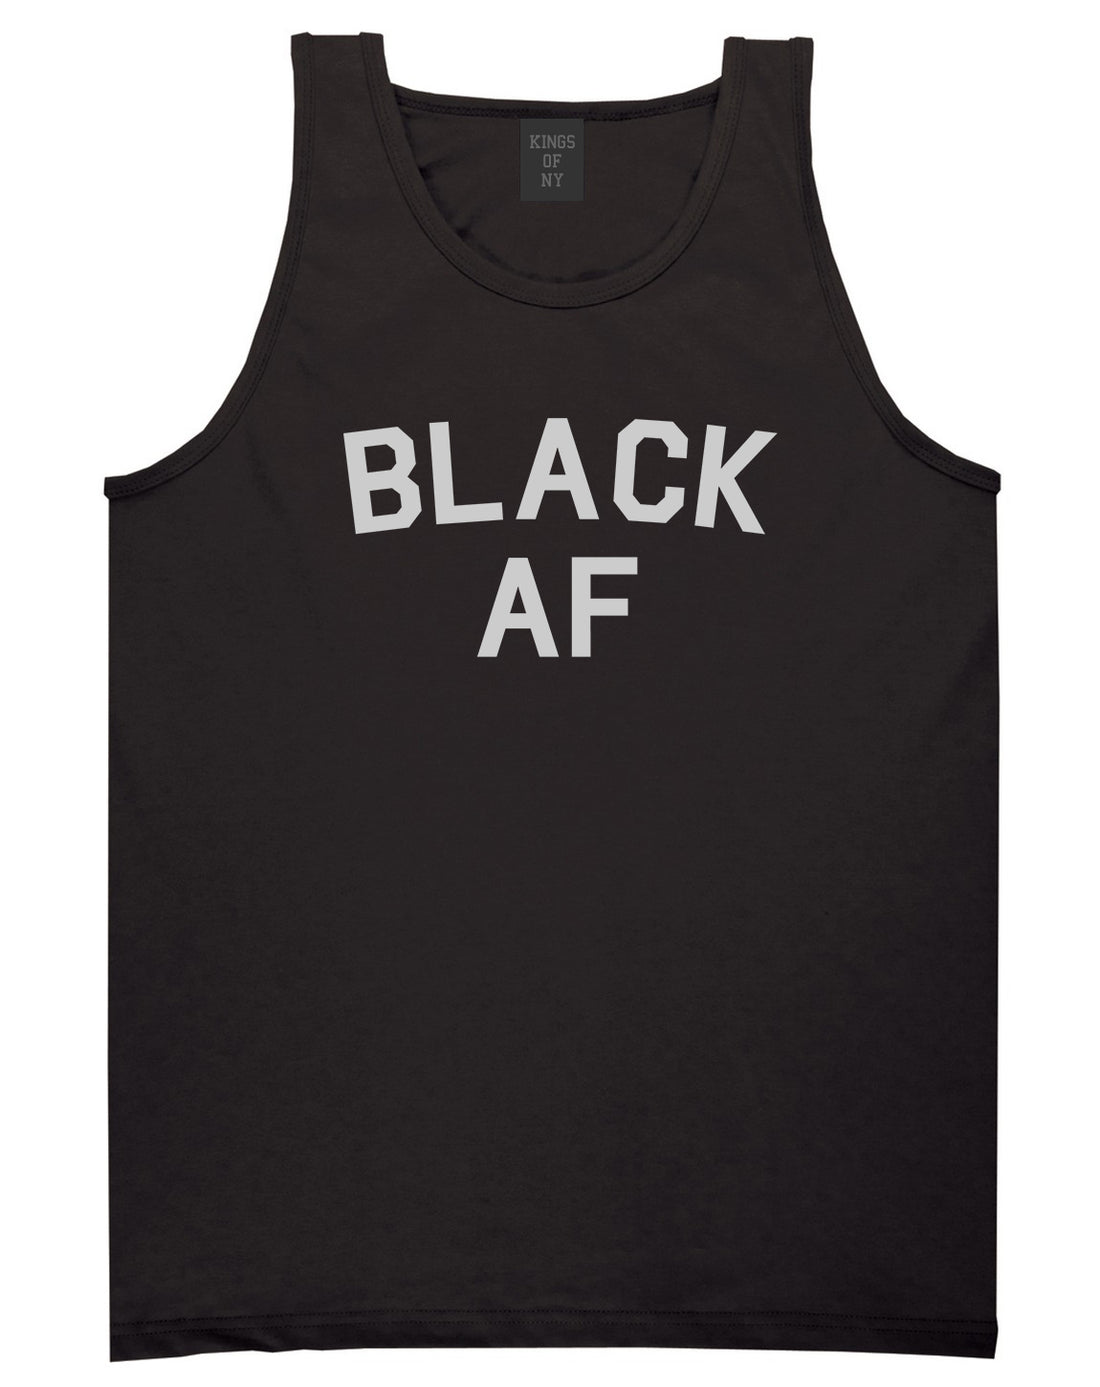 Black AF Mens Tank Top Shirt Black